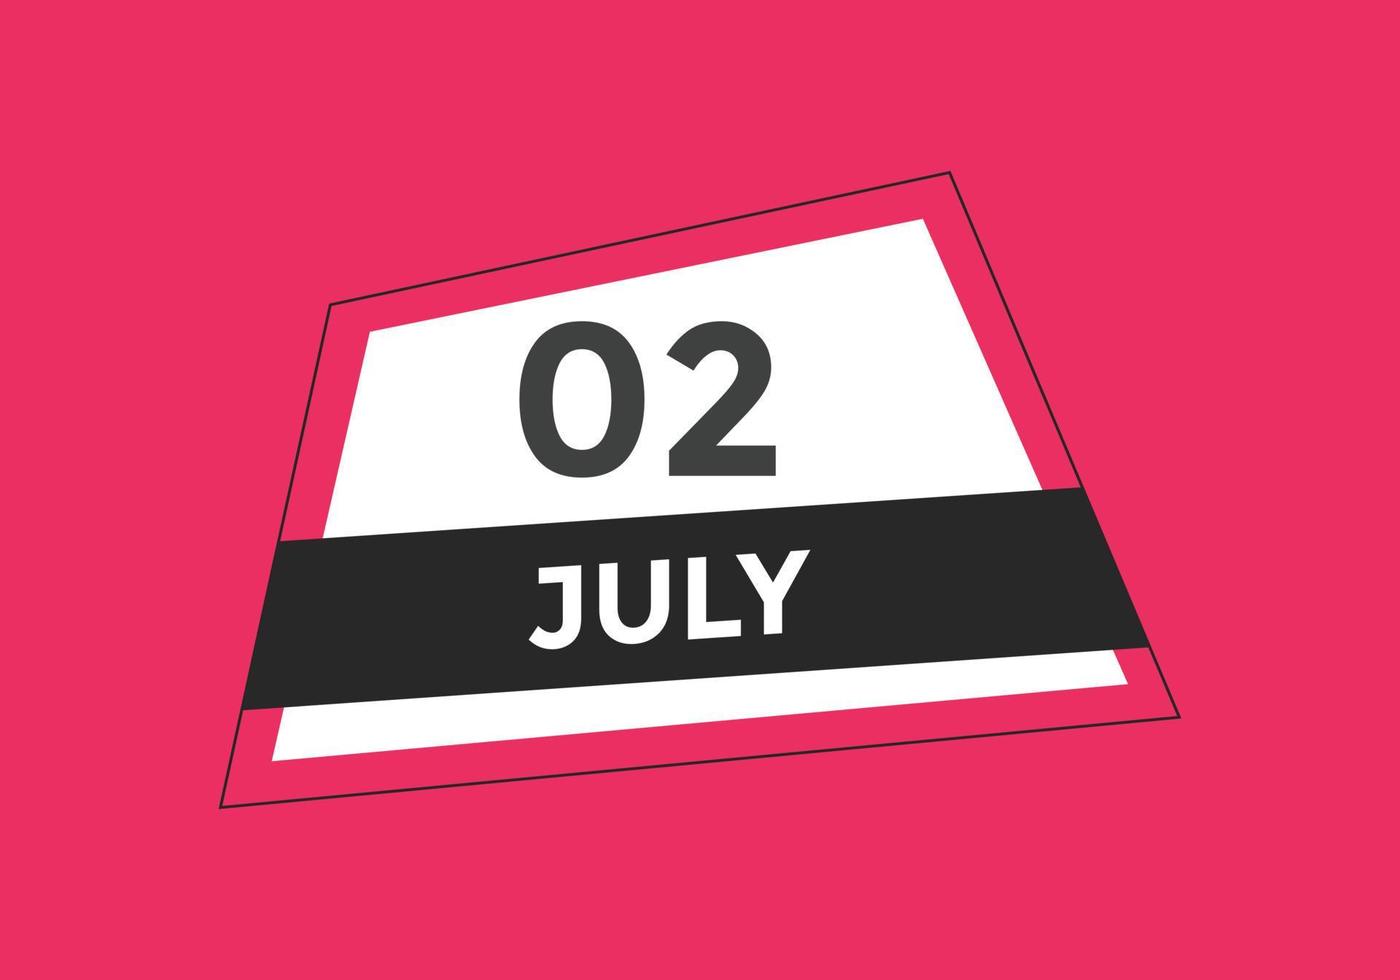 rappel du calendrier du 2 juillet. Modèle d'icône de calendrier quotidien du 2 juillet. modèle de conception d'icône calendrier 2 juillet. illustration vectorielle vecteur